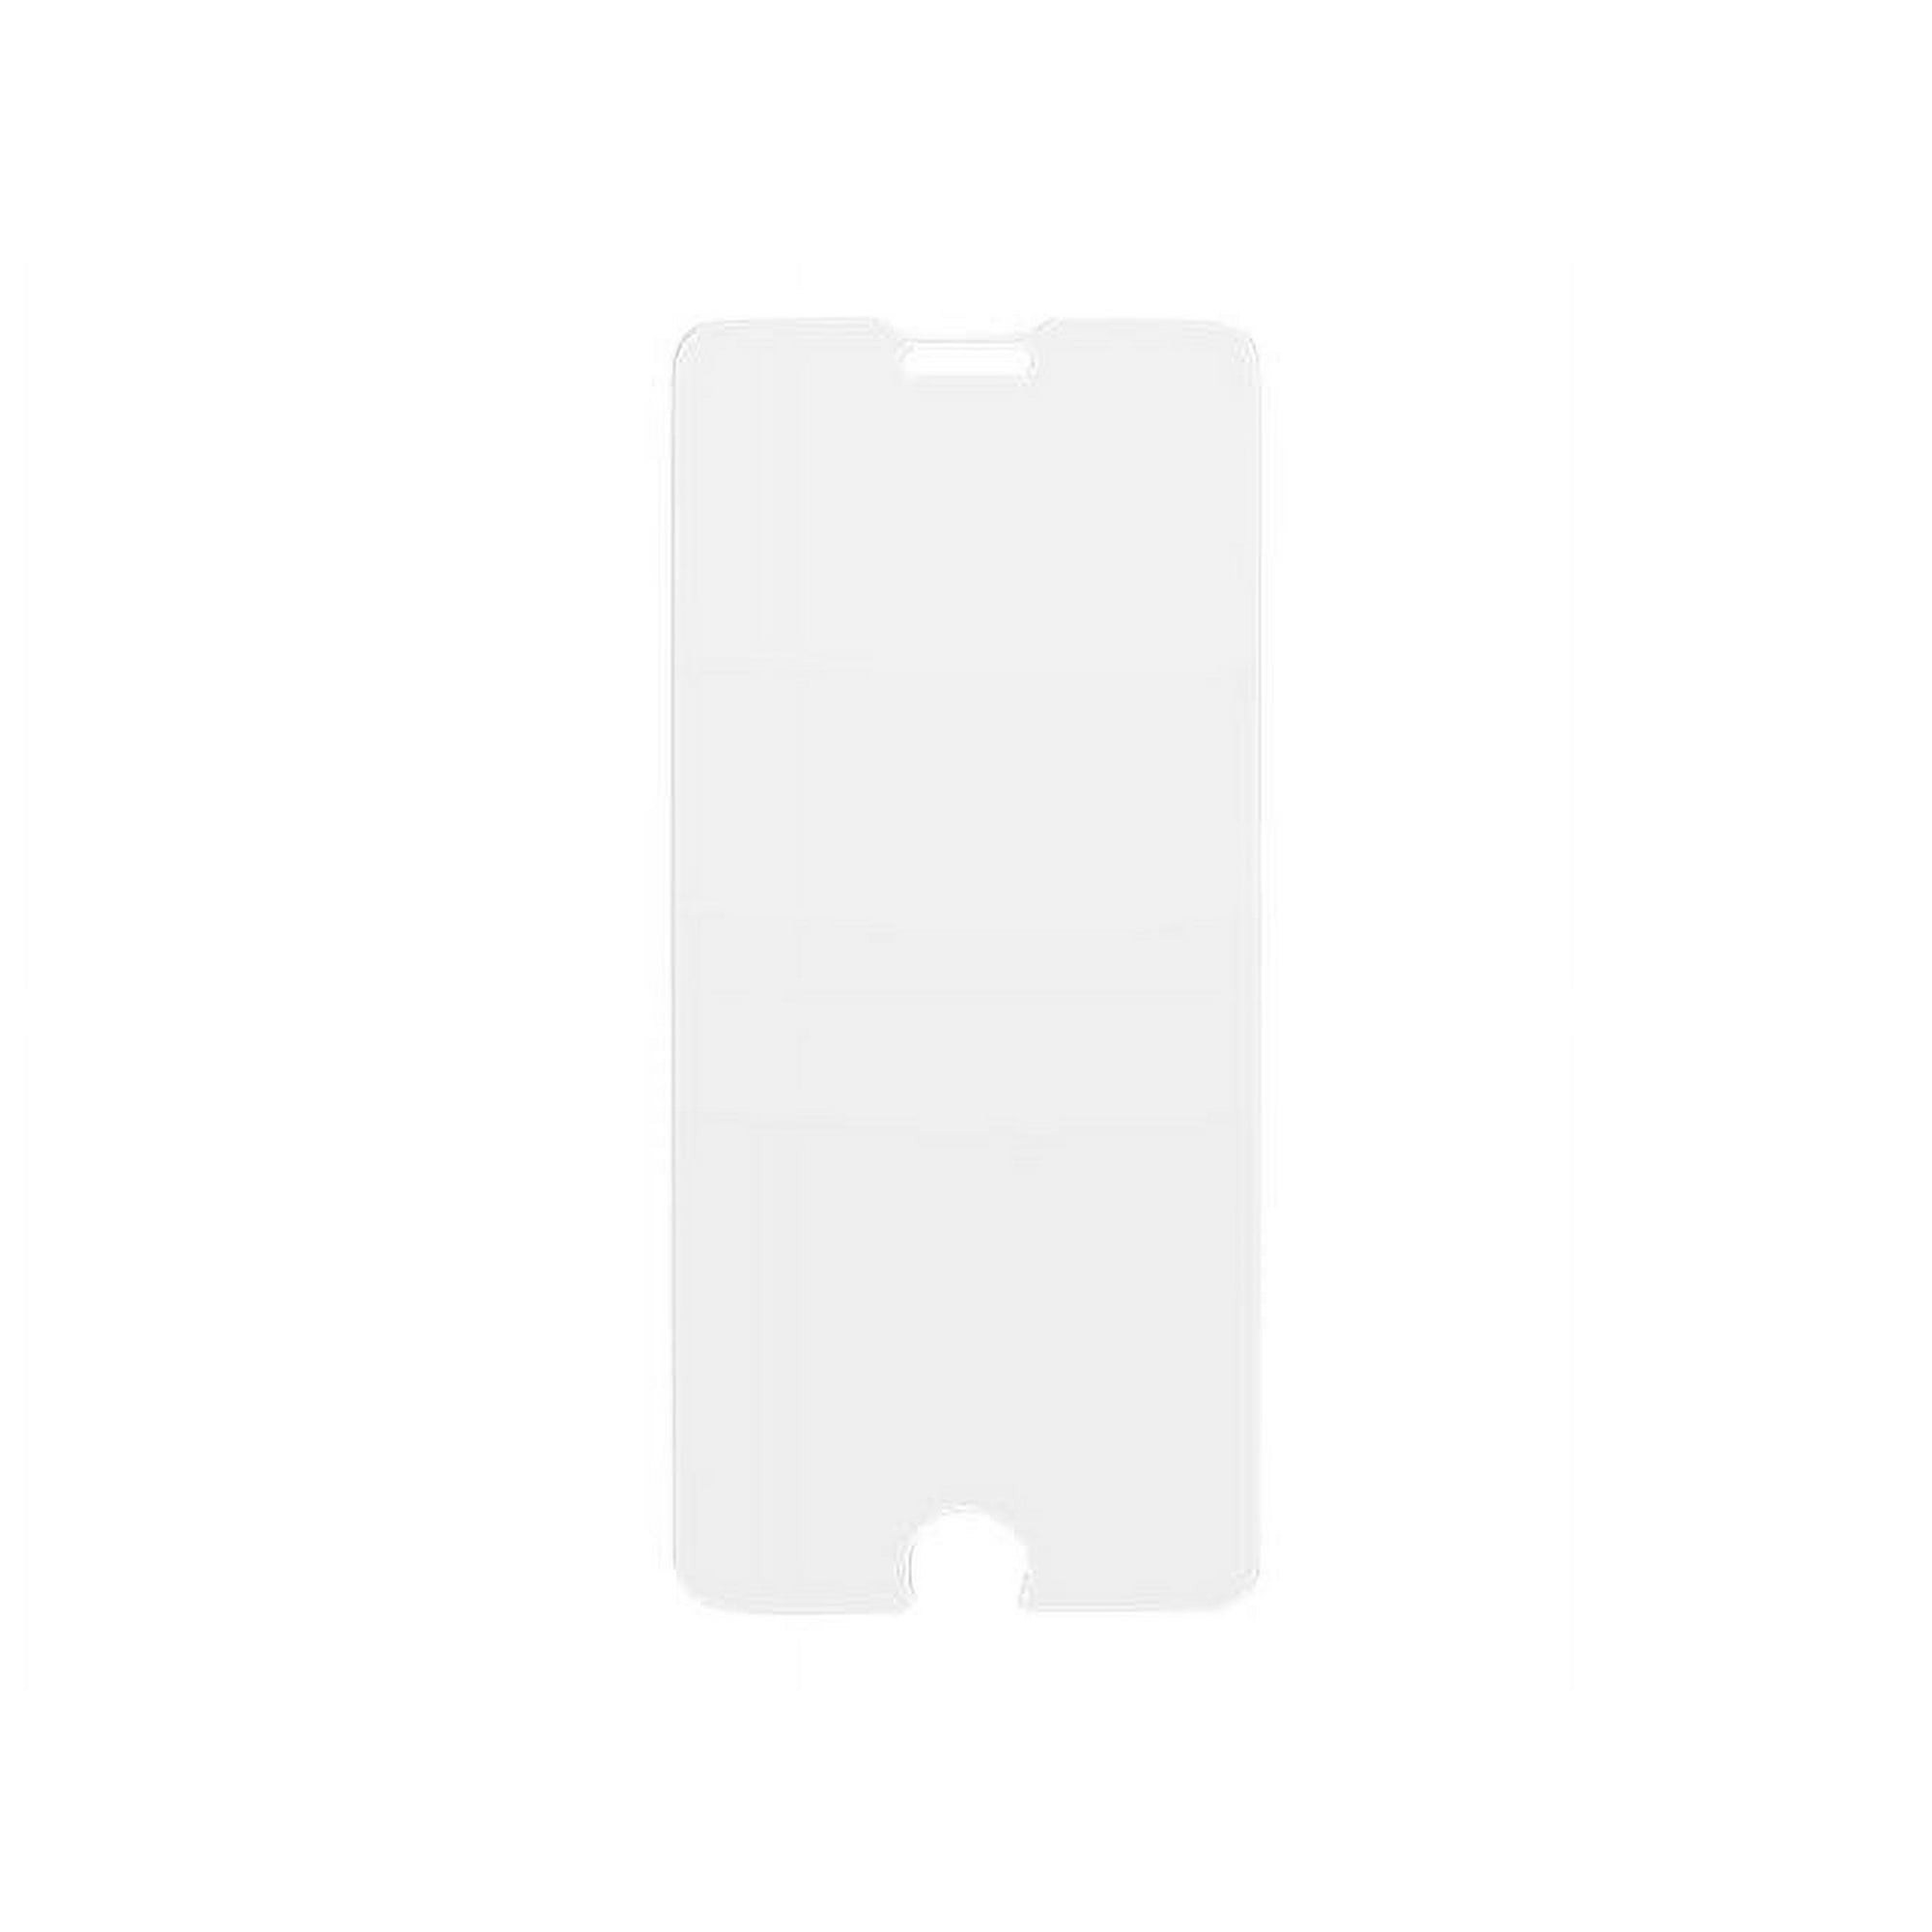 OtterBox Amplify Glare Guard Screen Protector for Apple iPhone 6/7/8/SE w/Glare Guard (New)